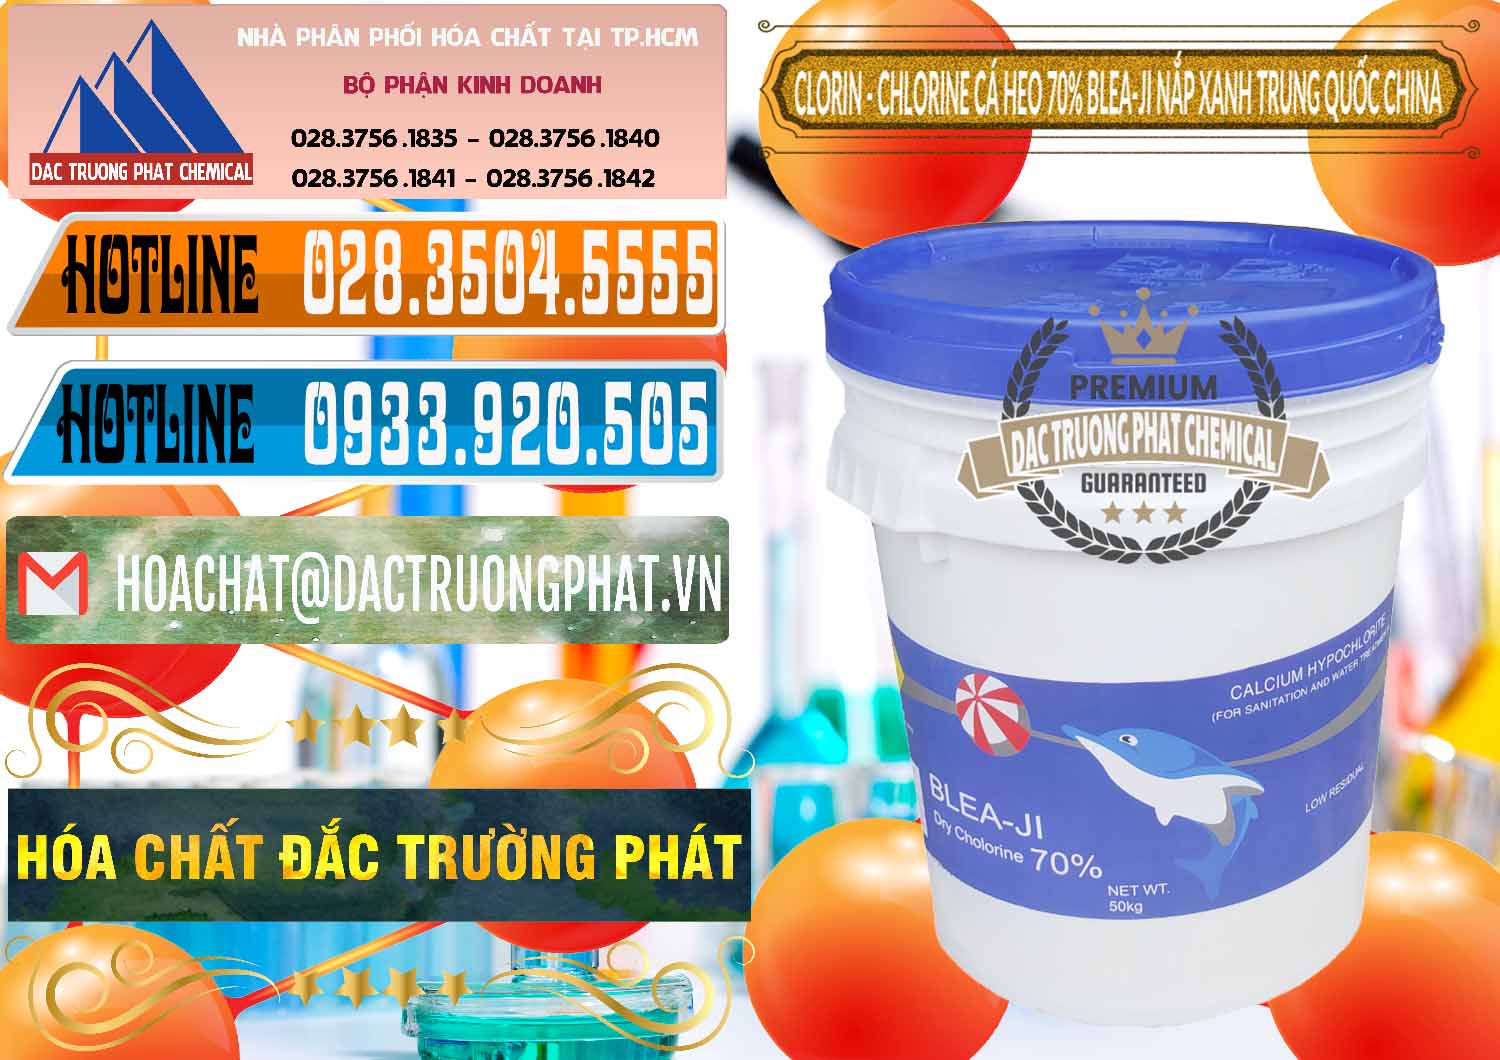 Công ty chuyên bán _ cung ứng Clorin - Chlorine Cá Heo 70% Cá Heo Blea-Ji Thùng Tròn Nắp Xanh Trung Quốc China - 0208 - Cung cấp ( nhập khẩu ) hóa chất tại TP.HCM - stmp.net